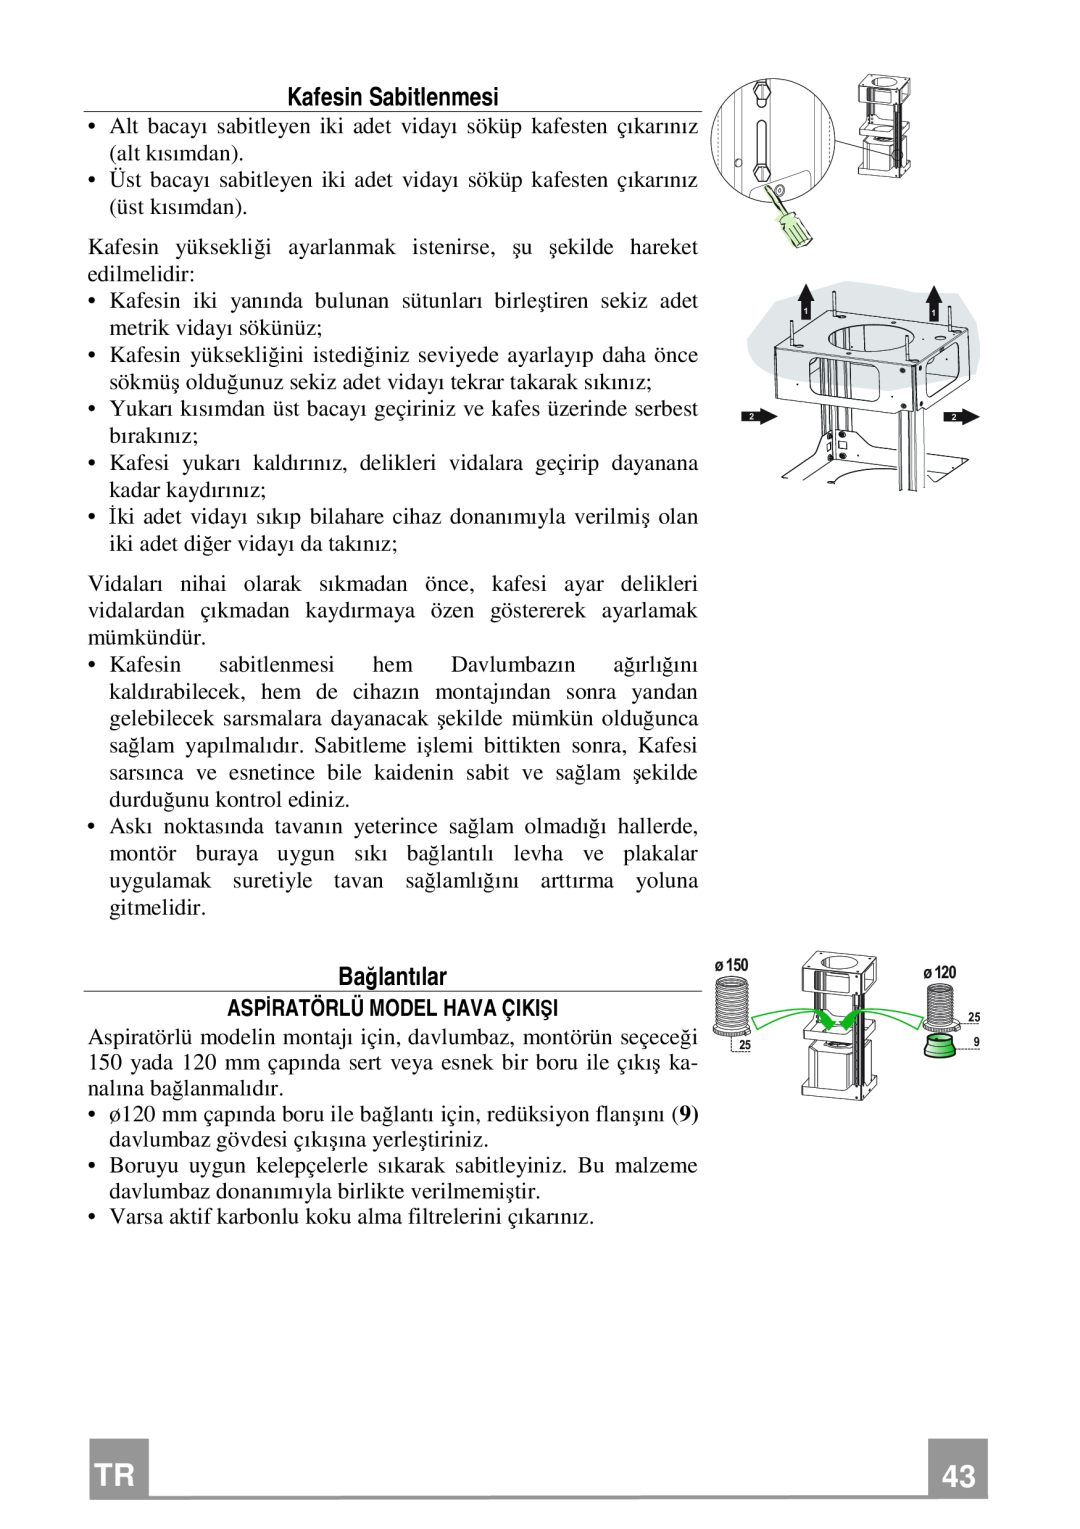 Franke Consumer Products FGC 906 I manual Kafesin Sabitlenmesi, Bağlantılar, Aspiratörlü Model Hava Çikişi 